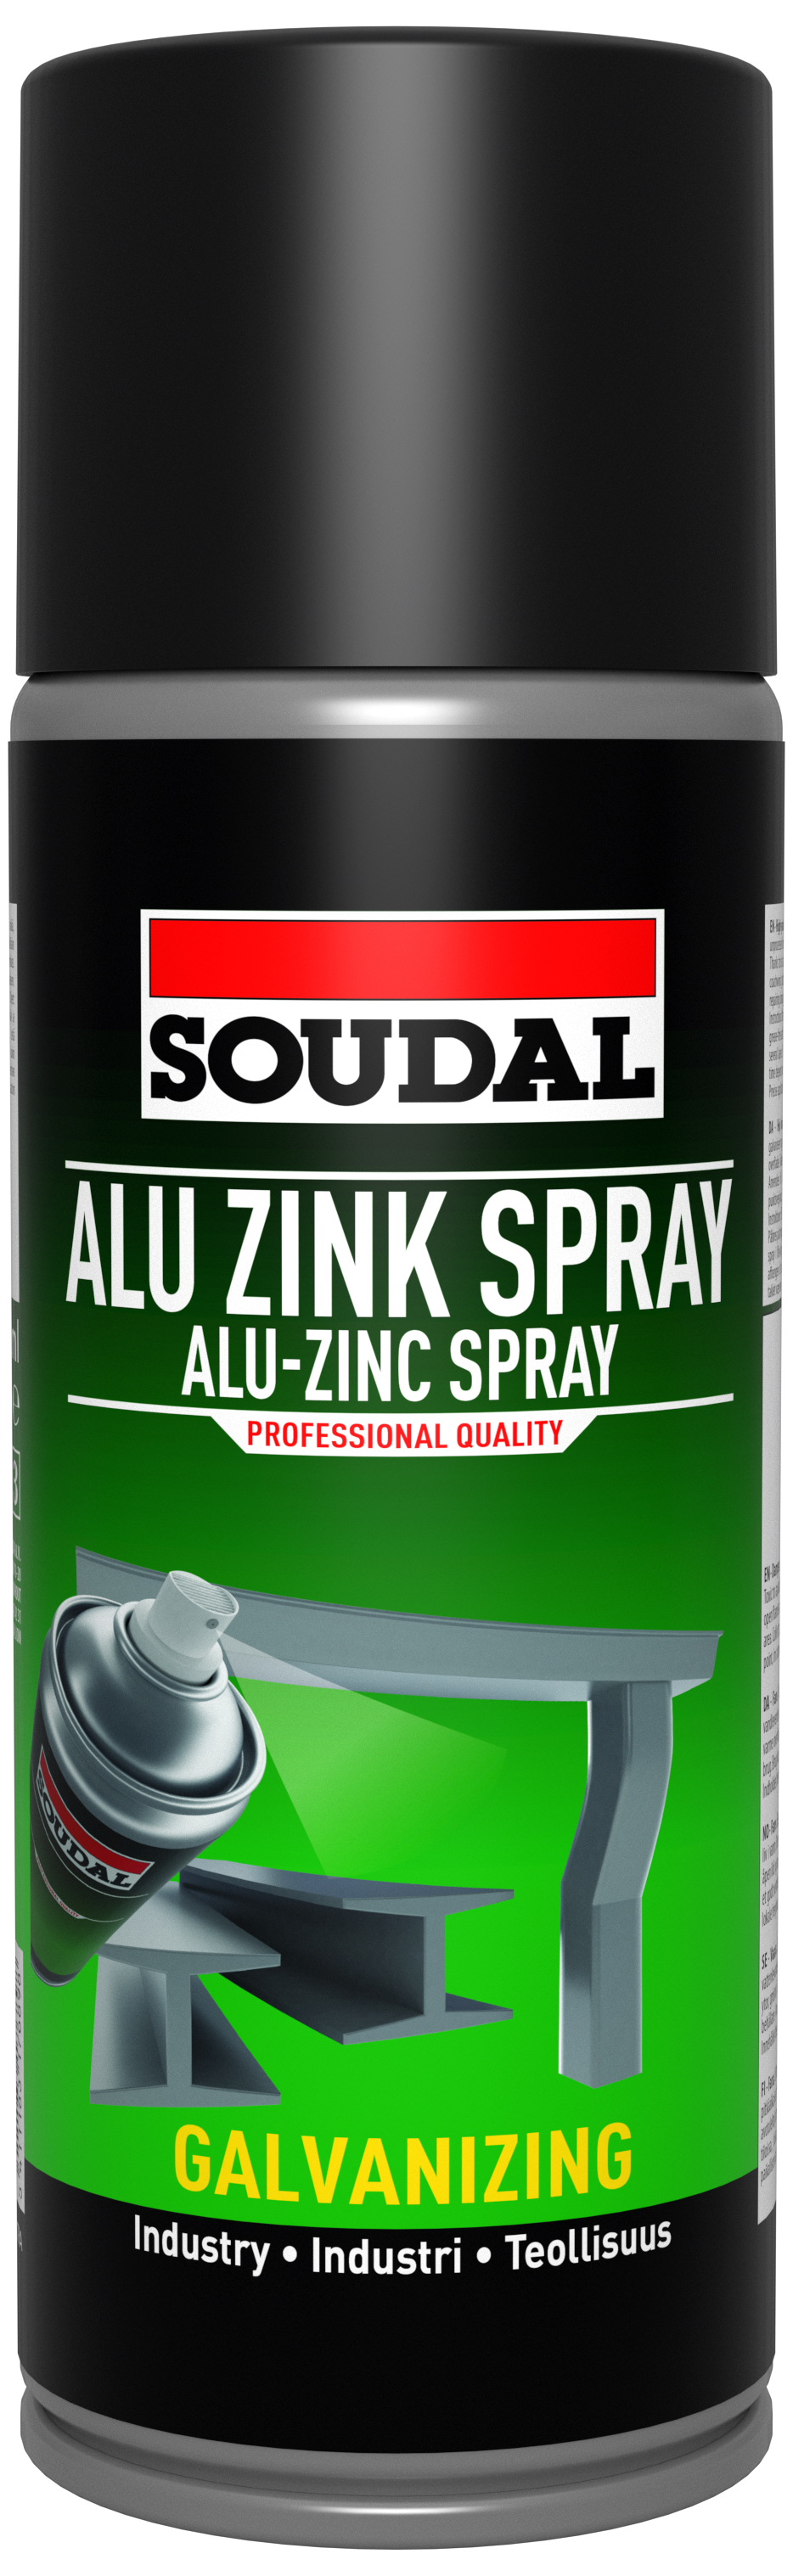 Soudal Alu-Zink Spray koldgalvanisering 400ml 395176